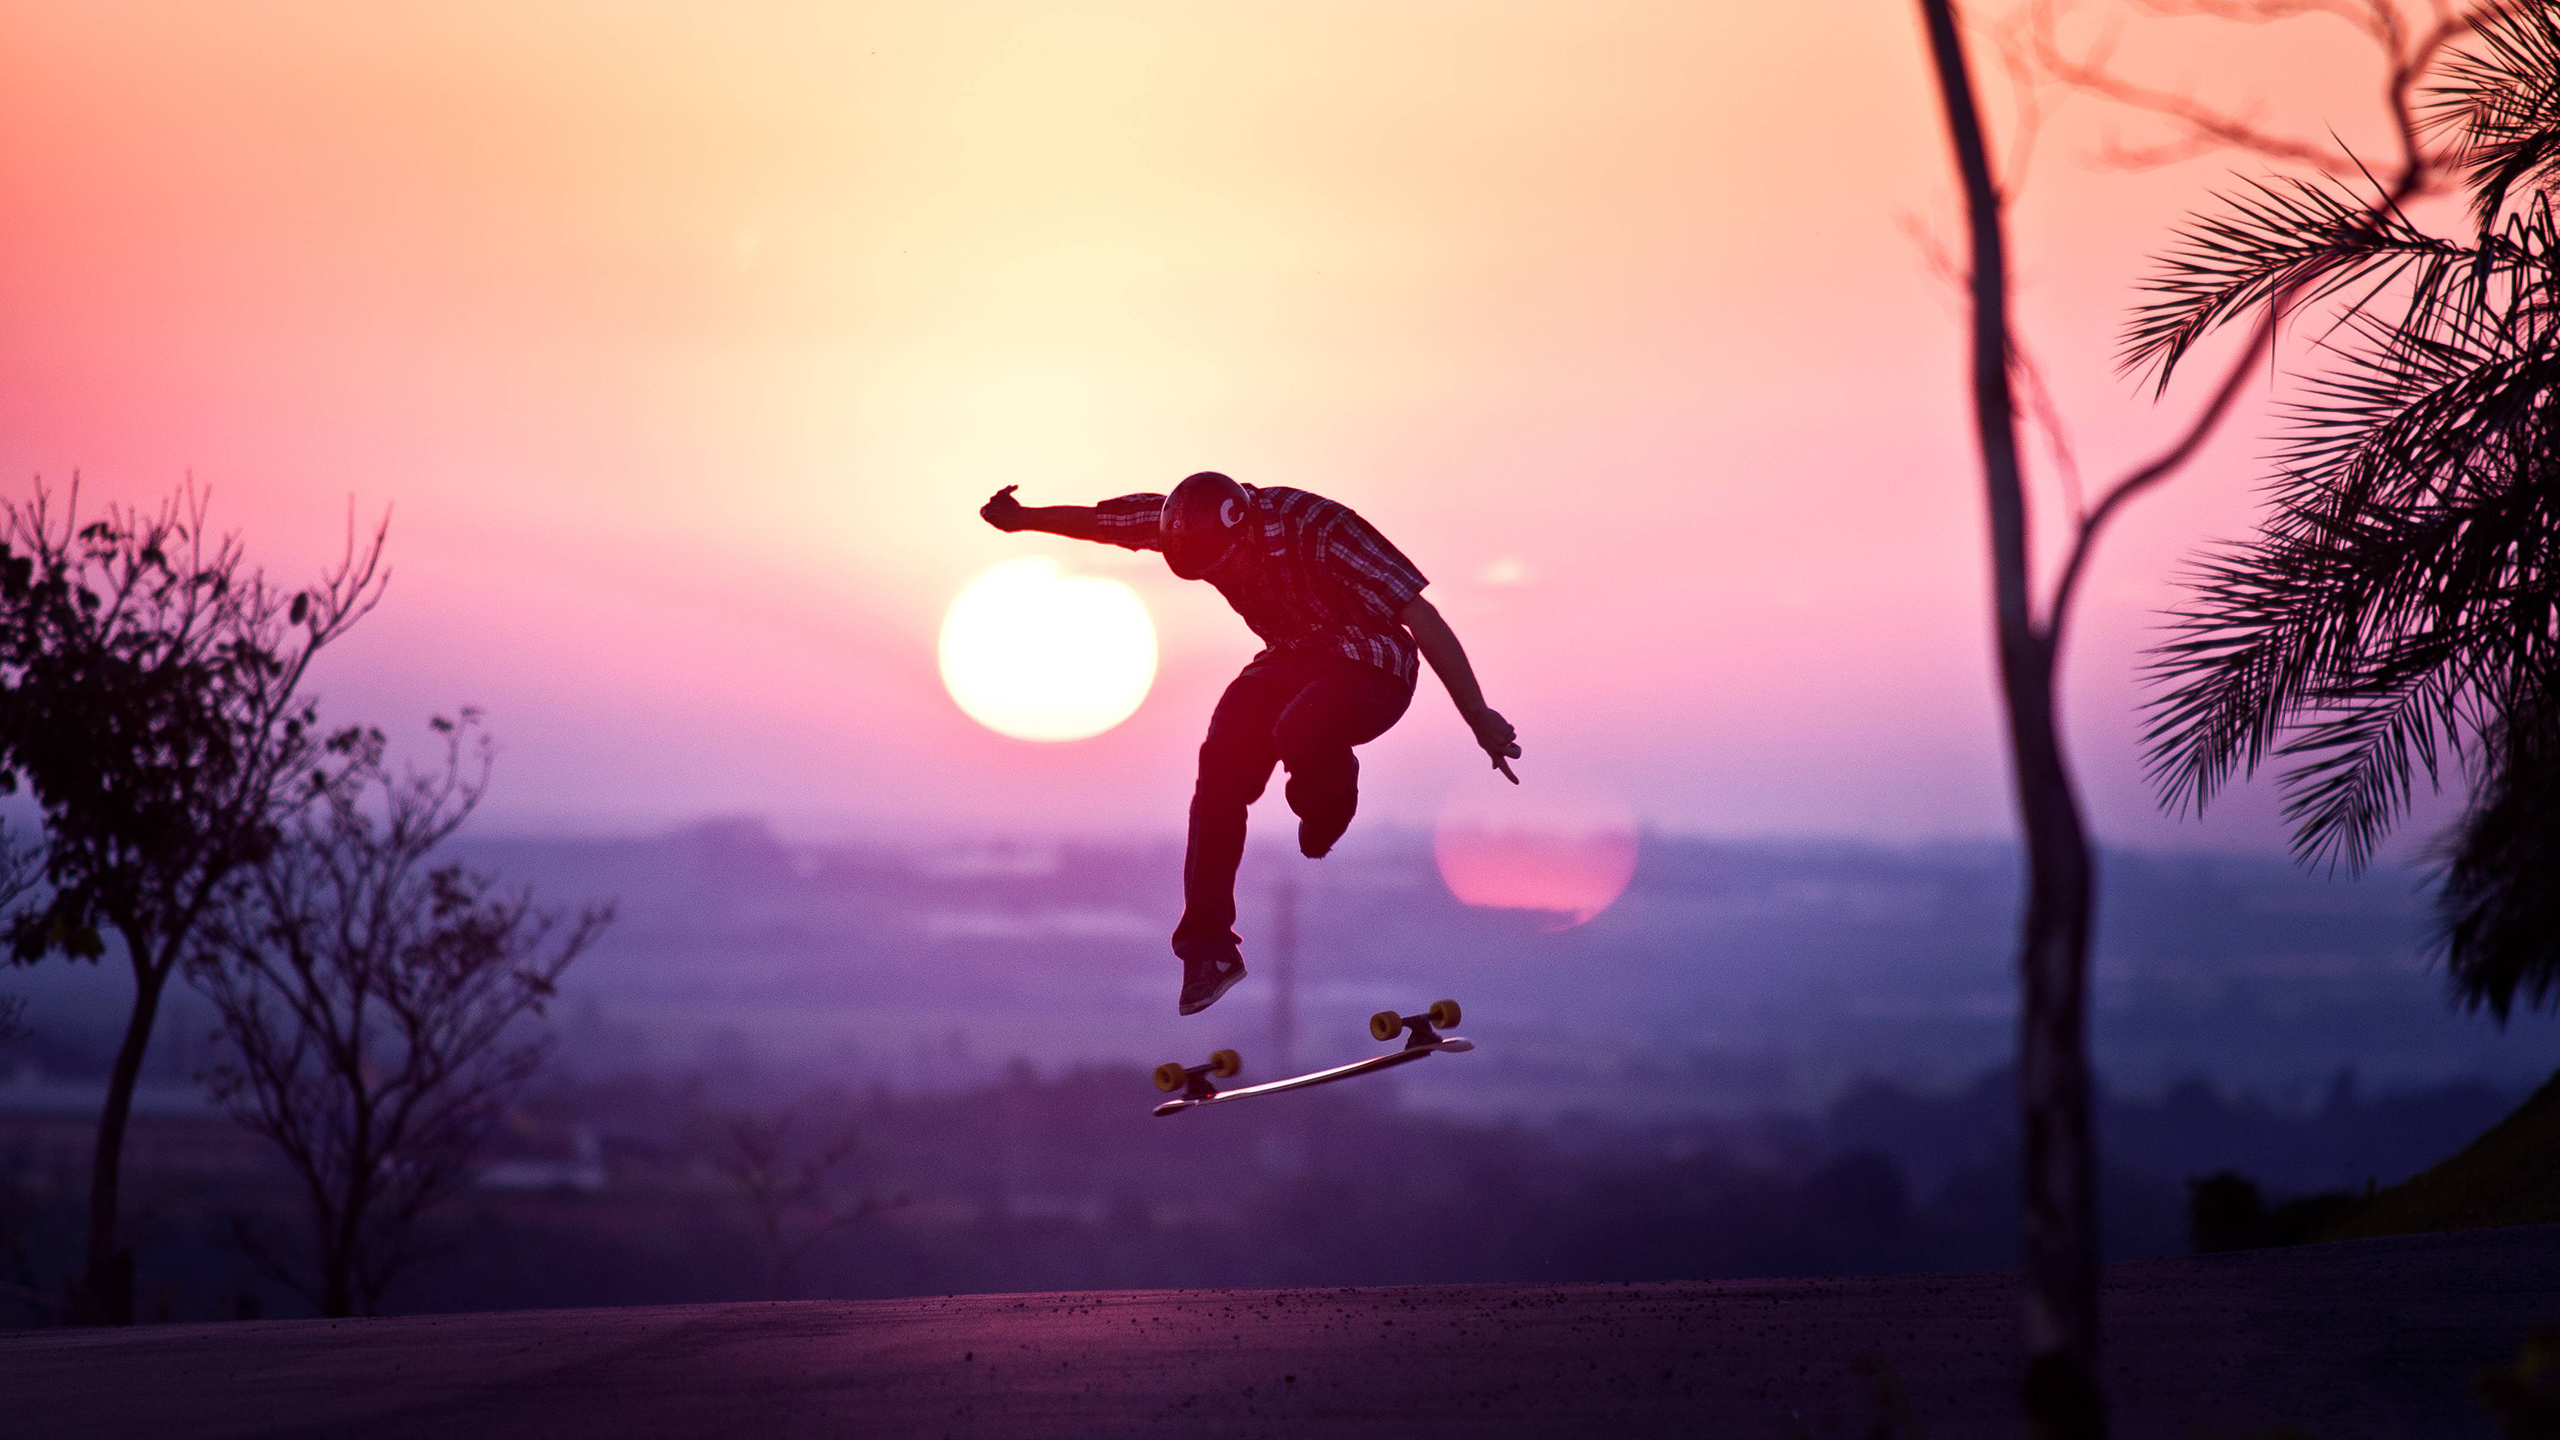 General 2560x1440 skateboard sunset asphalt outdoors jumping low light